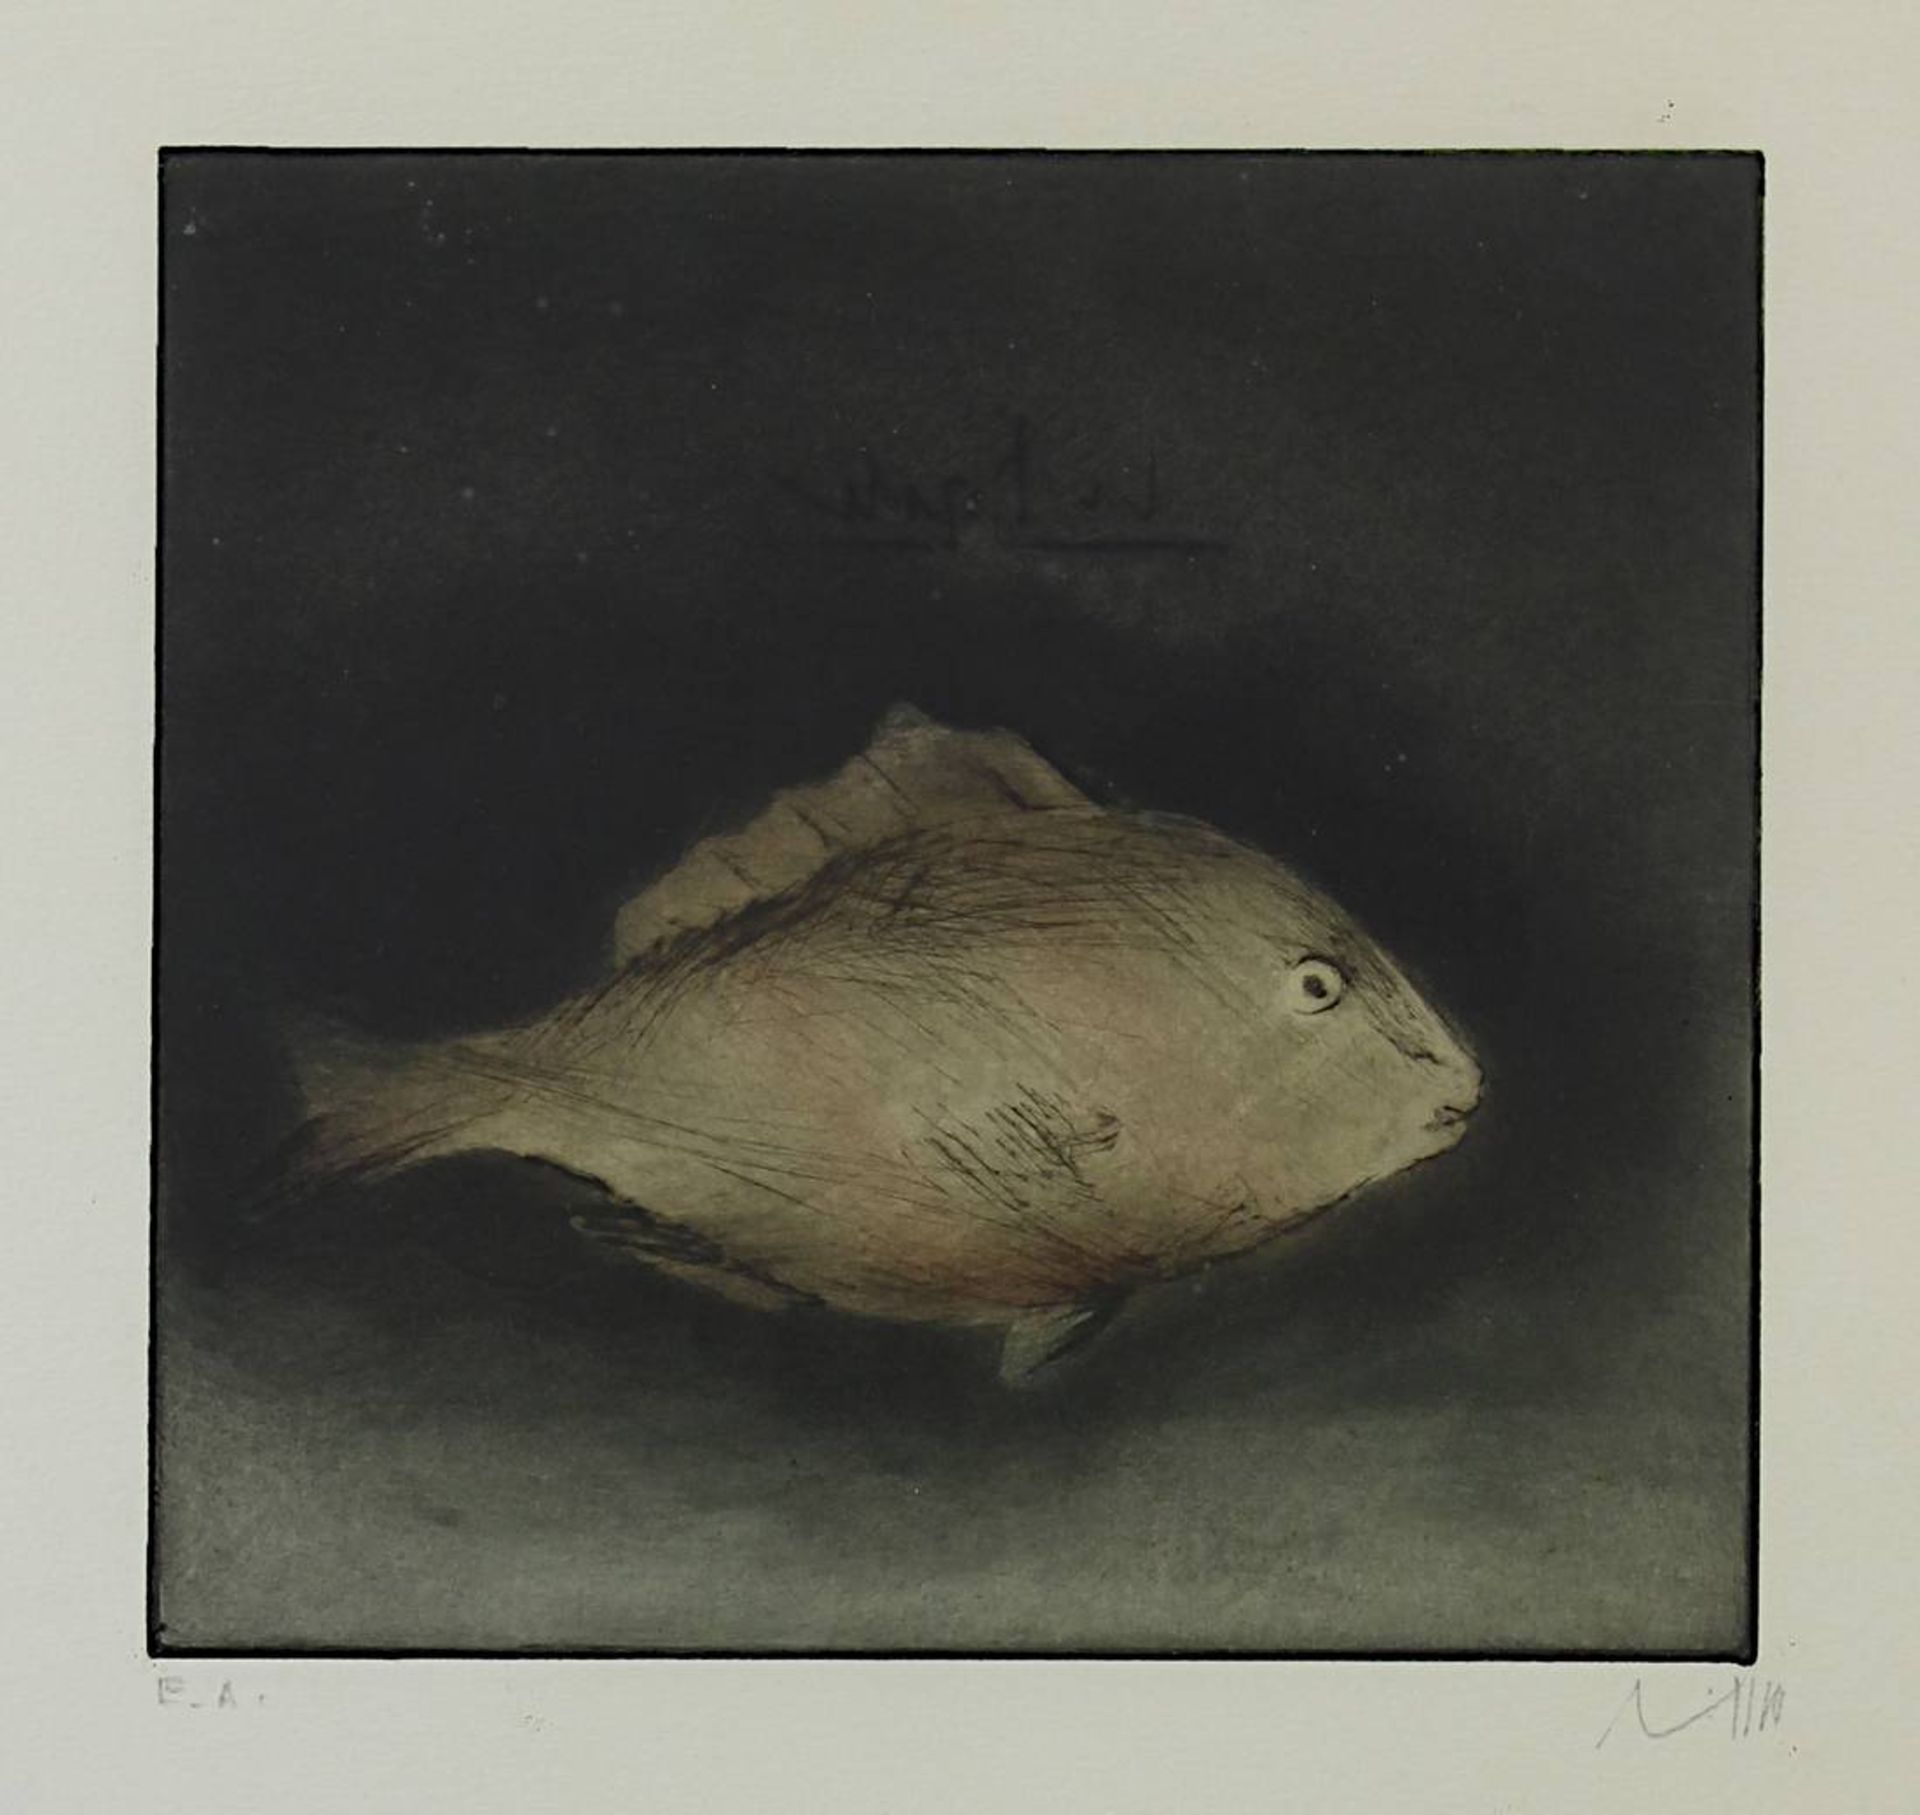 Lichtner-Aix, Werner (Berlin 1939 - 1987 München) Zwei Farbradierungen: Fisch, 18,5 x 20 cm, am - Image 3 of 5